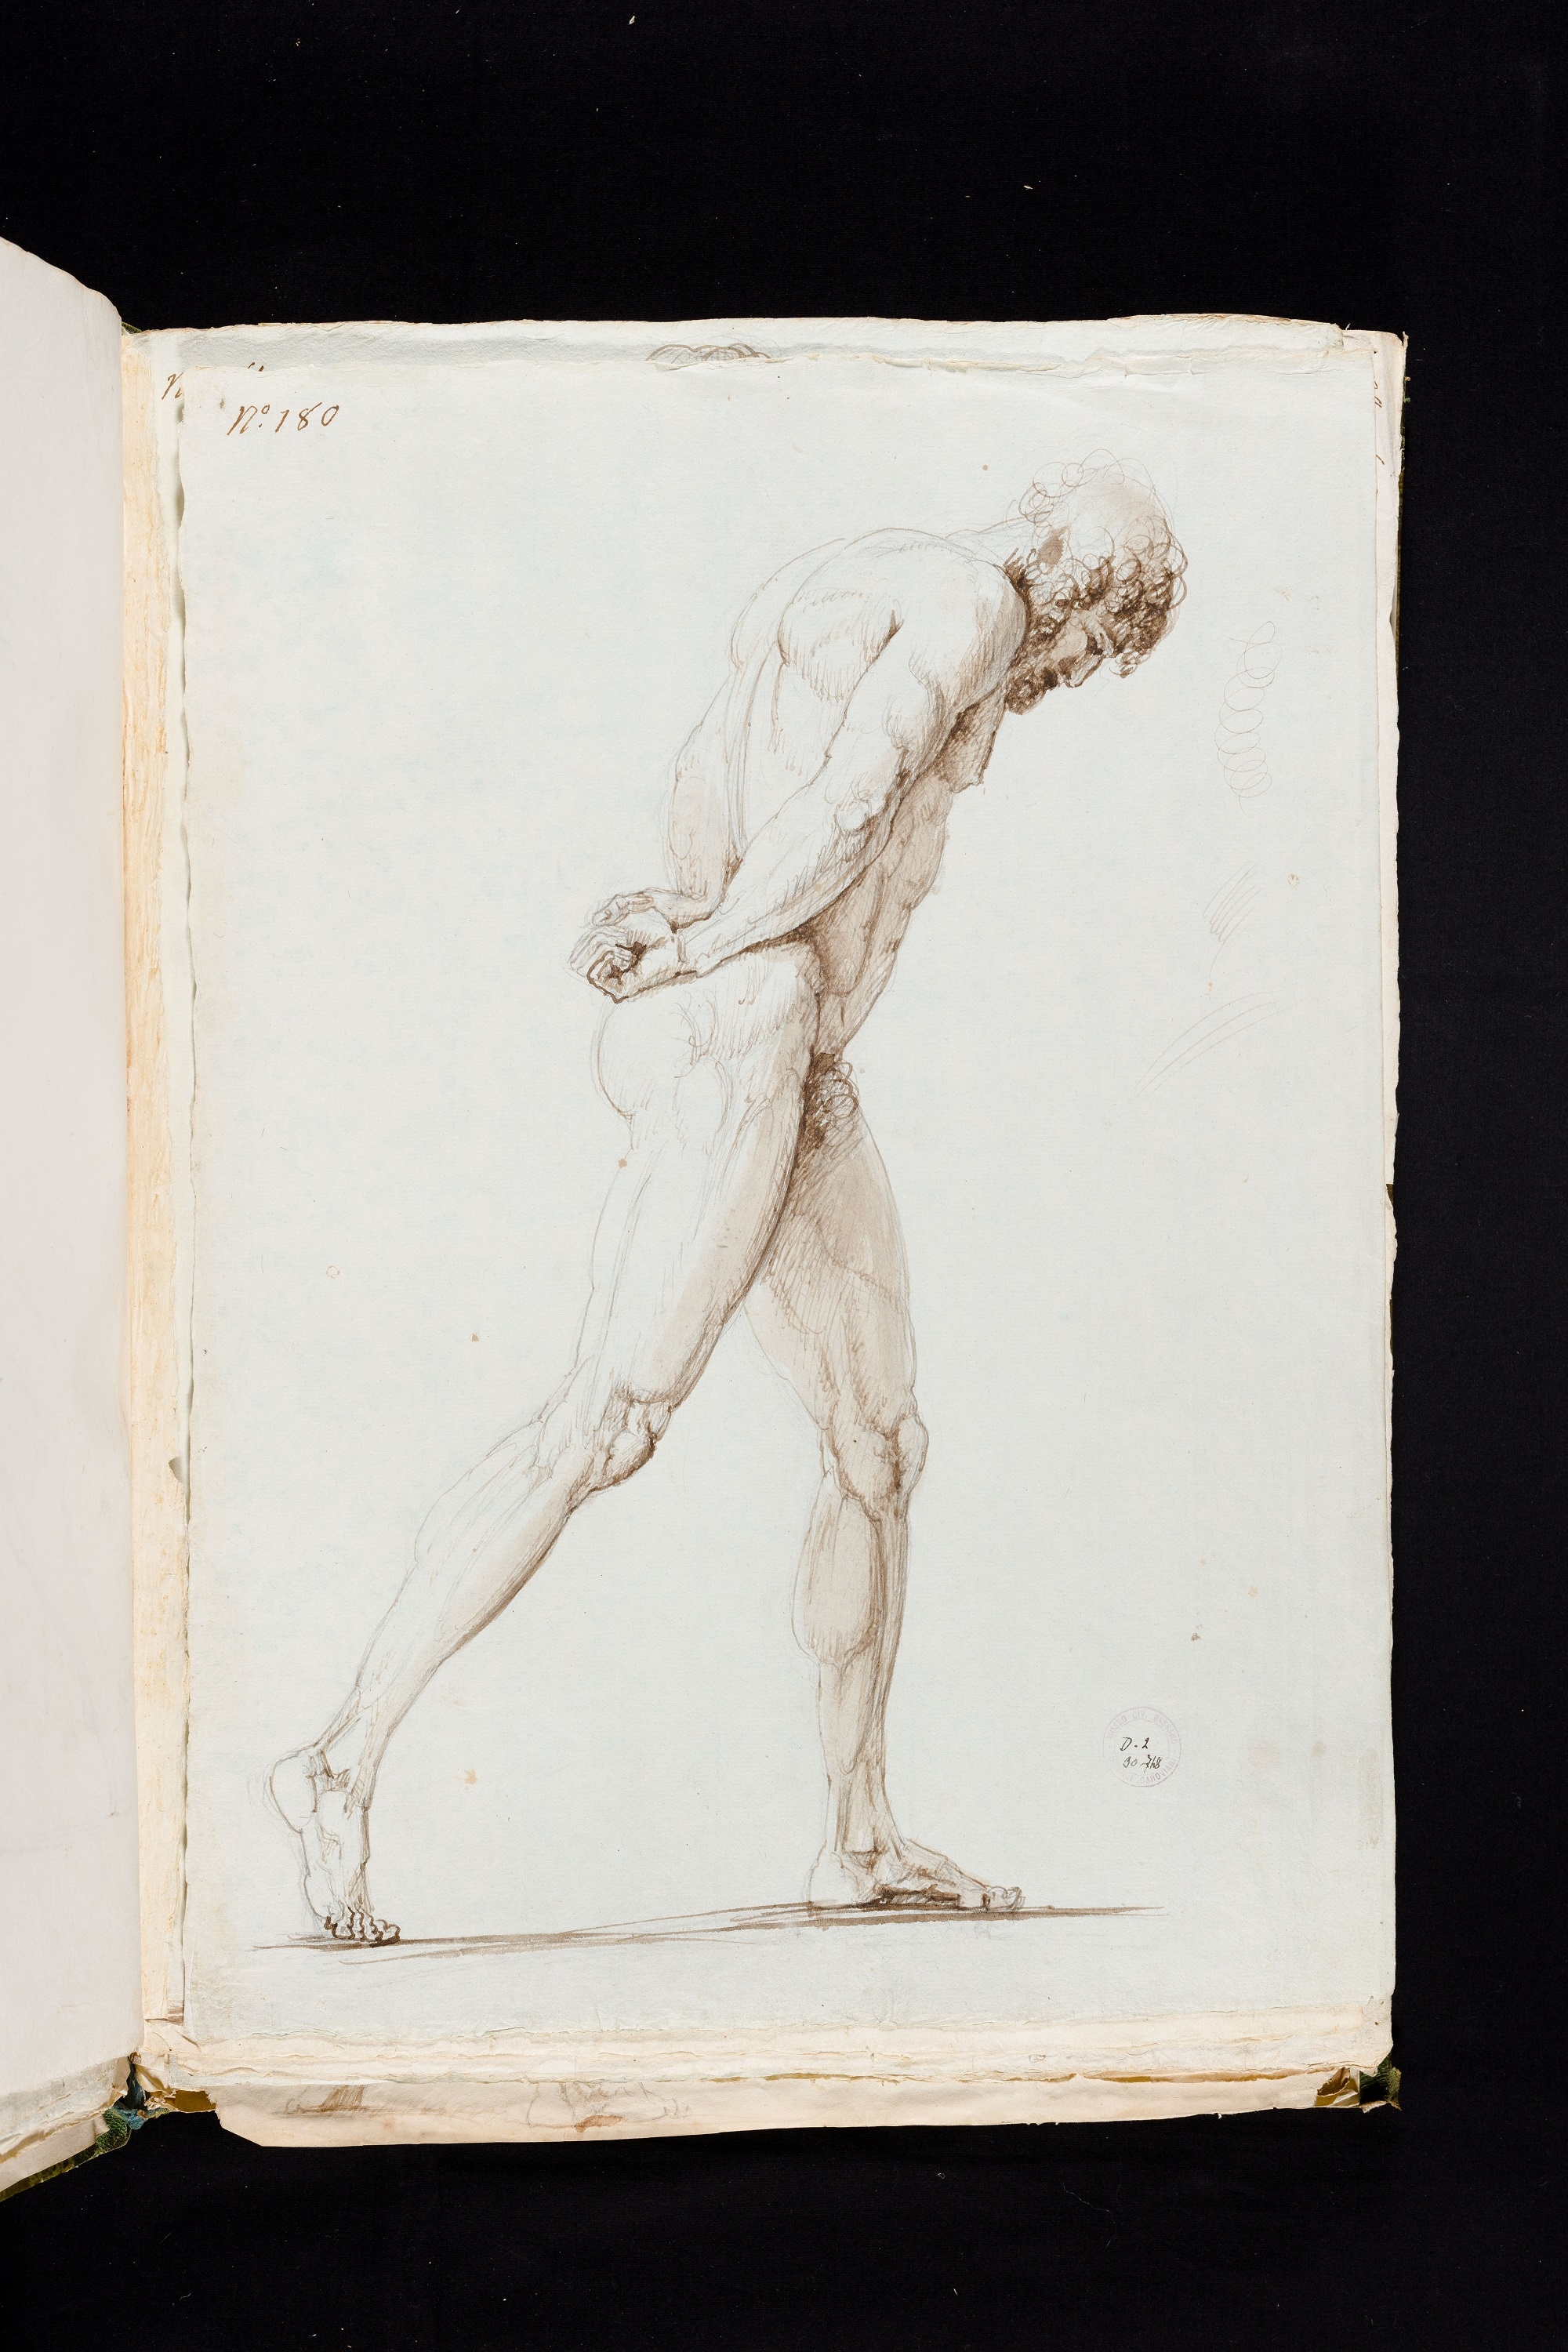 Antonio Canova (1757 – 1822), Nudo virile di profilo che cammina, 1794, Matita, penna, acquerello bruno, acquerello bruno su carta, 467x335 mm., Bassano del Grappa, Museo Civico, Gabinetto Disegni e Stampe